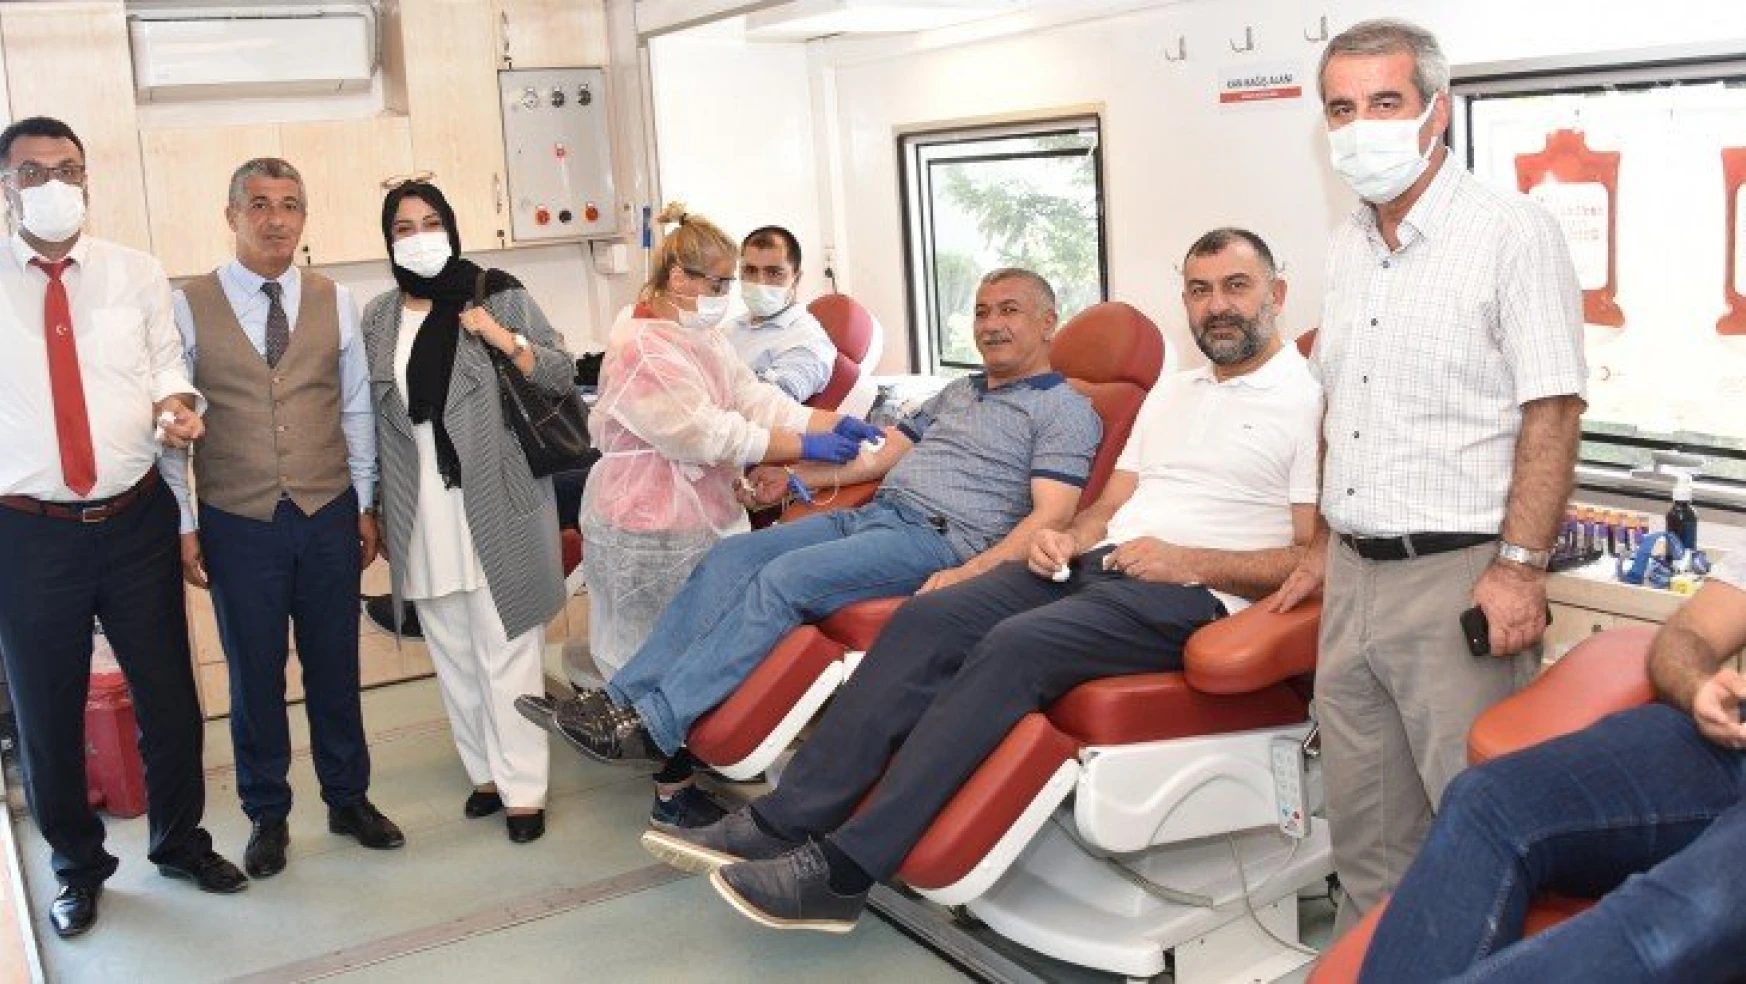 Malatya Büyükşehir Belediyesi'nden Kızılay'a Kan Bağışı